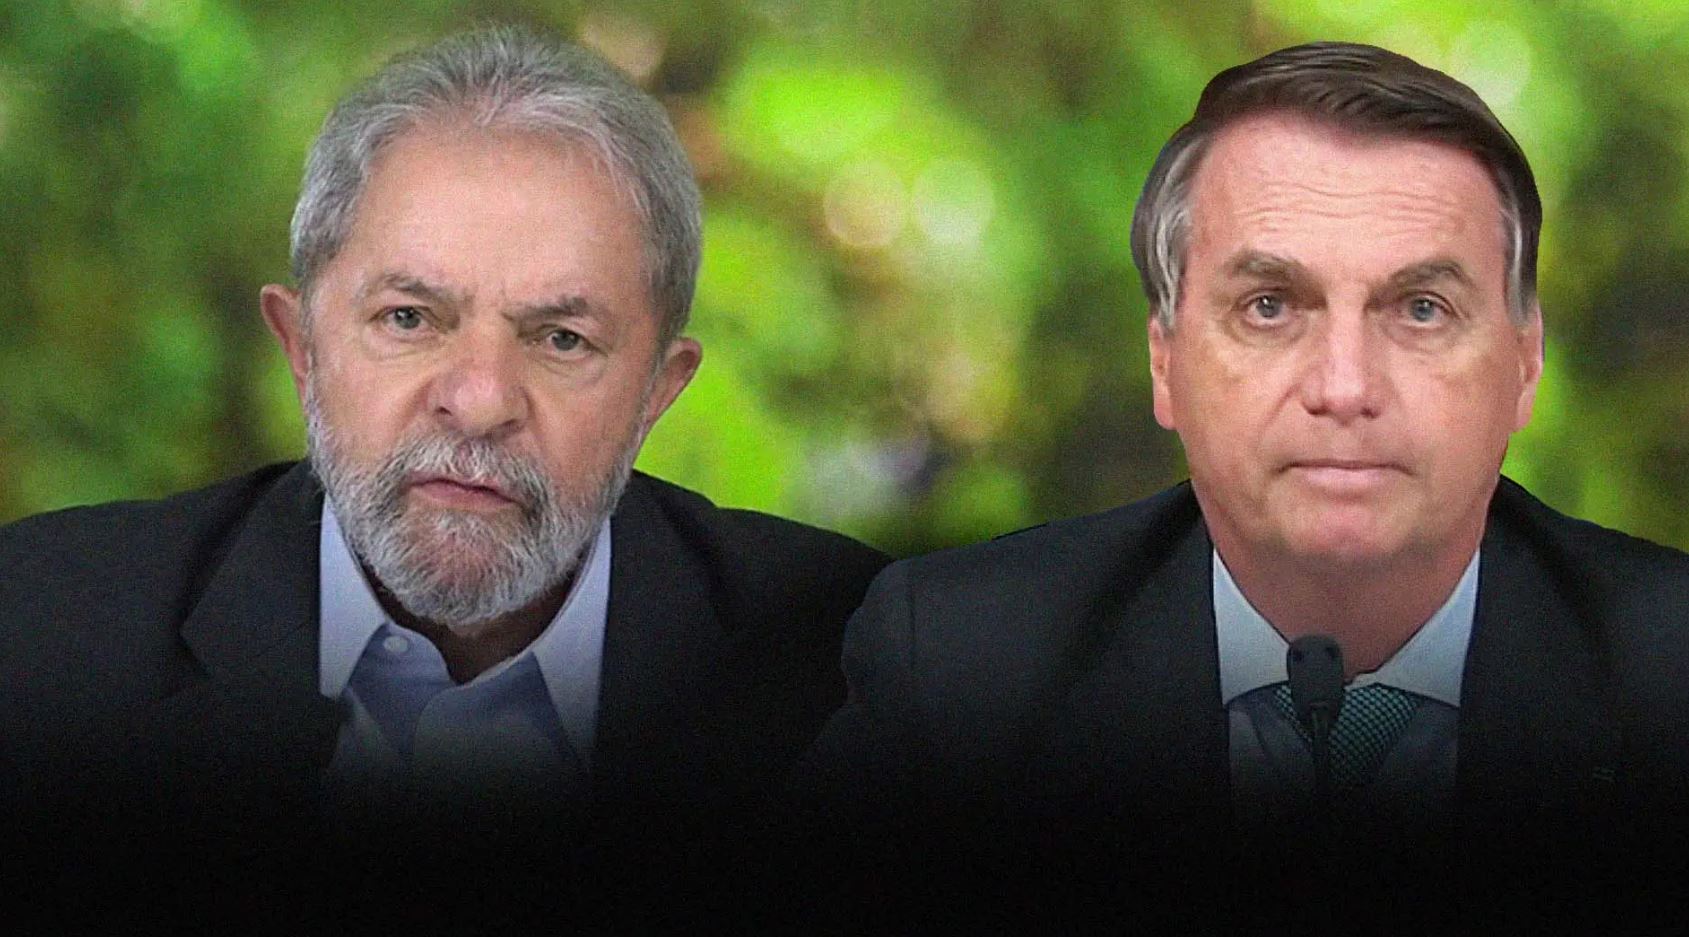 Former Brazilian President Lula da Silva (left) and Brazilian President Jair Bolsonaro (right).